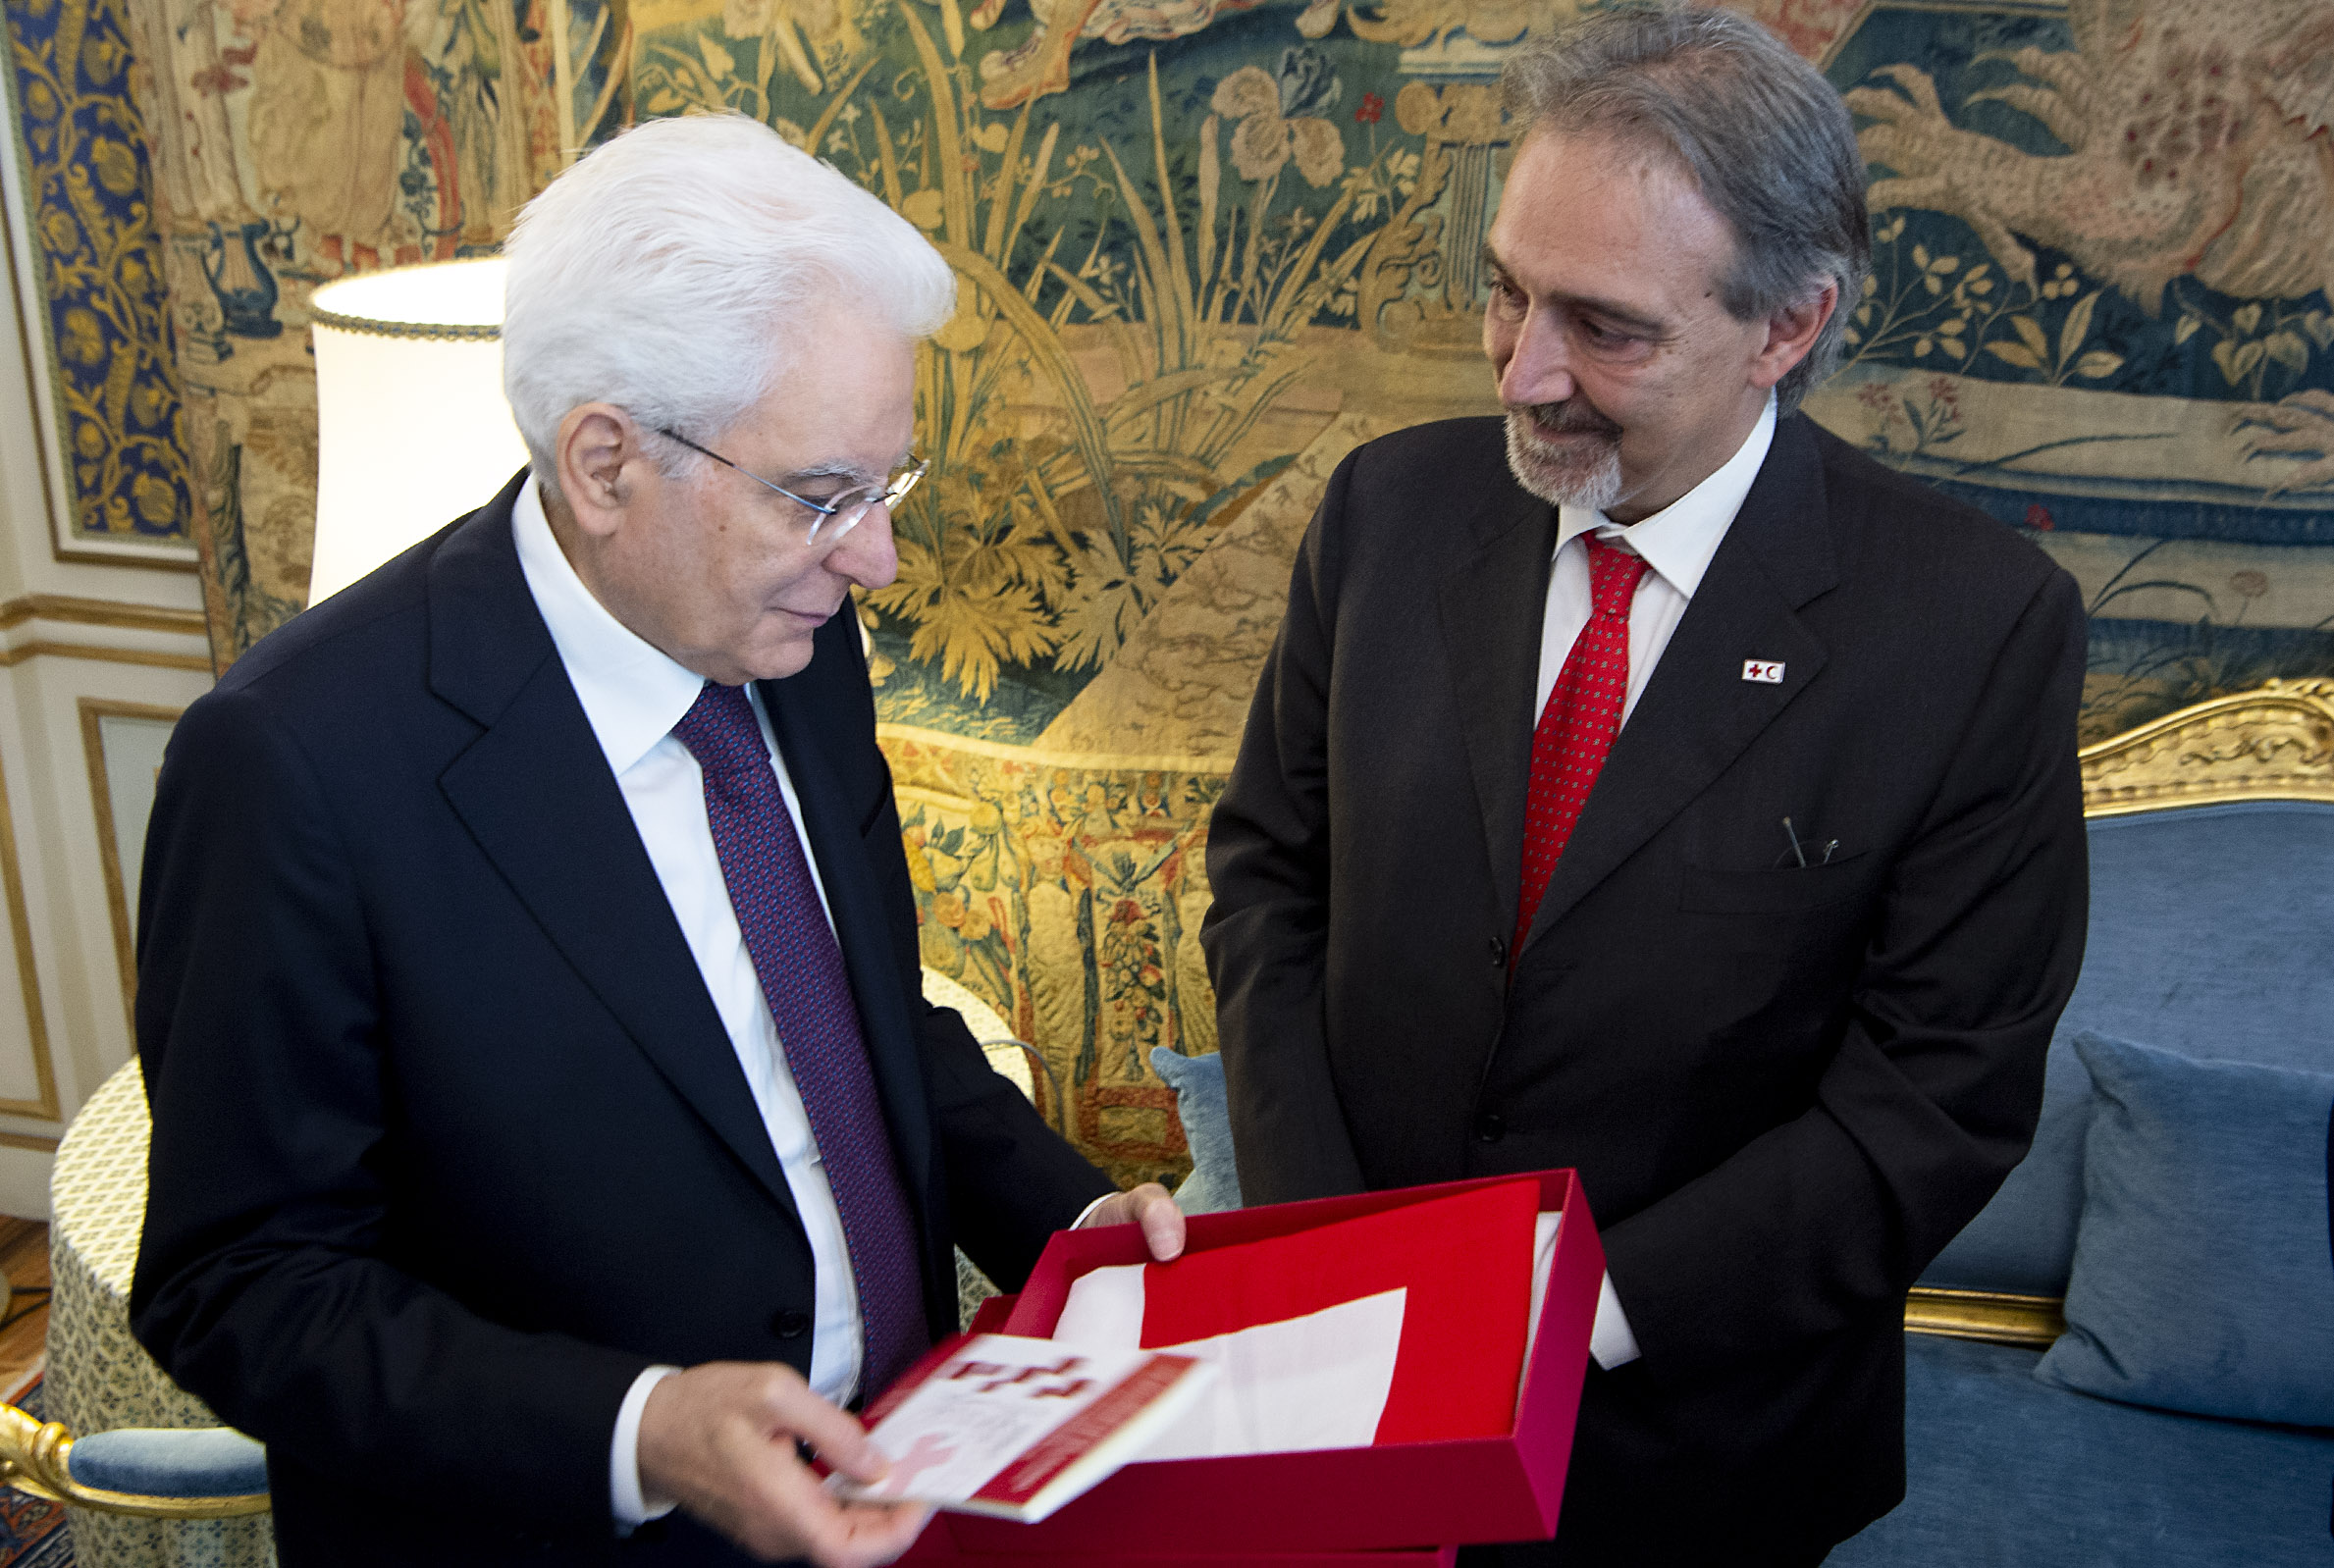 Quirinale, la Croce Rossa Italiana incontra il Presidente Mattarella: “Il volontariato ha un ruolo cruciale in Italia”